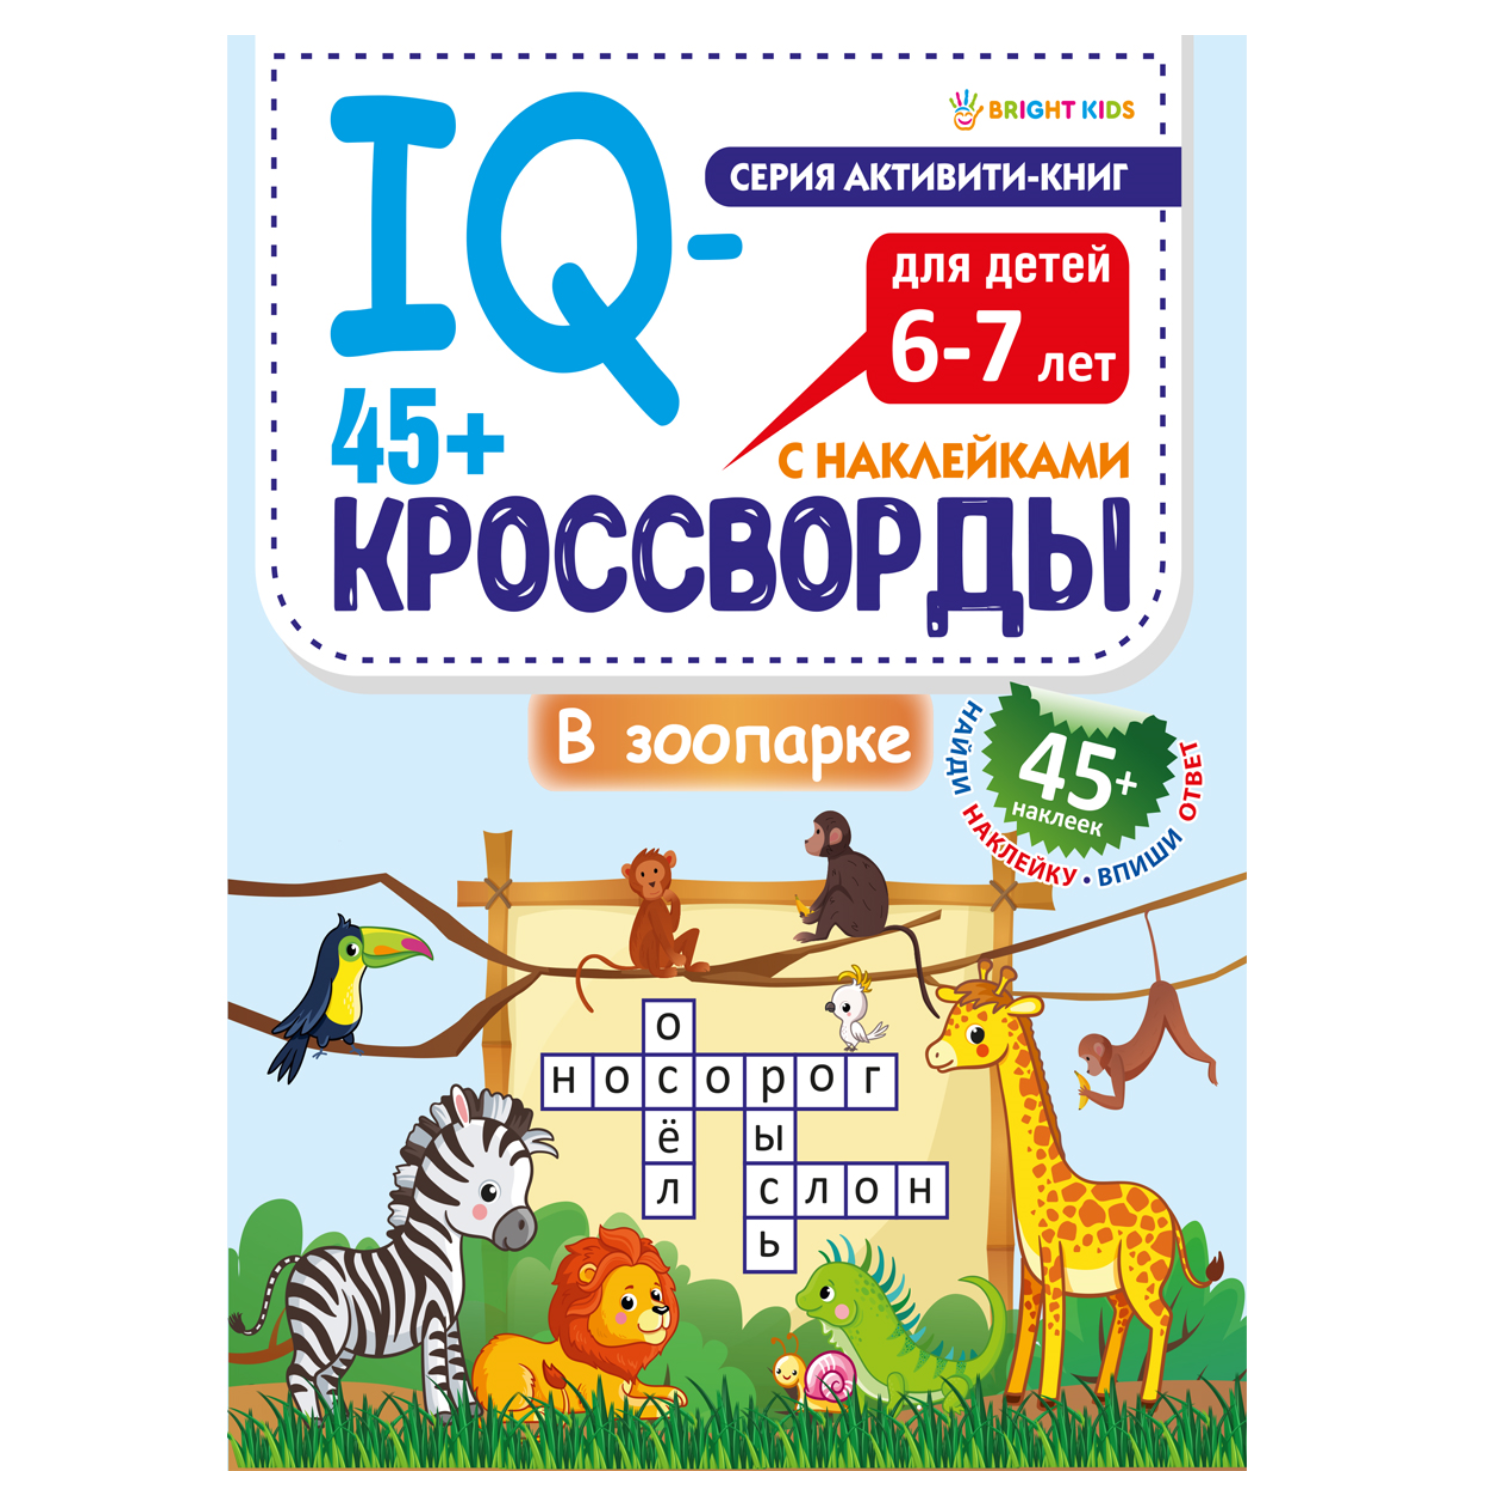 IQ-кроссворды Bright Kids В зоопарке А4 12 листов + 2 листа с наклейками - фото 2